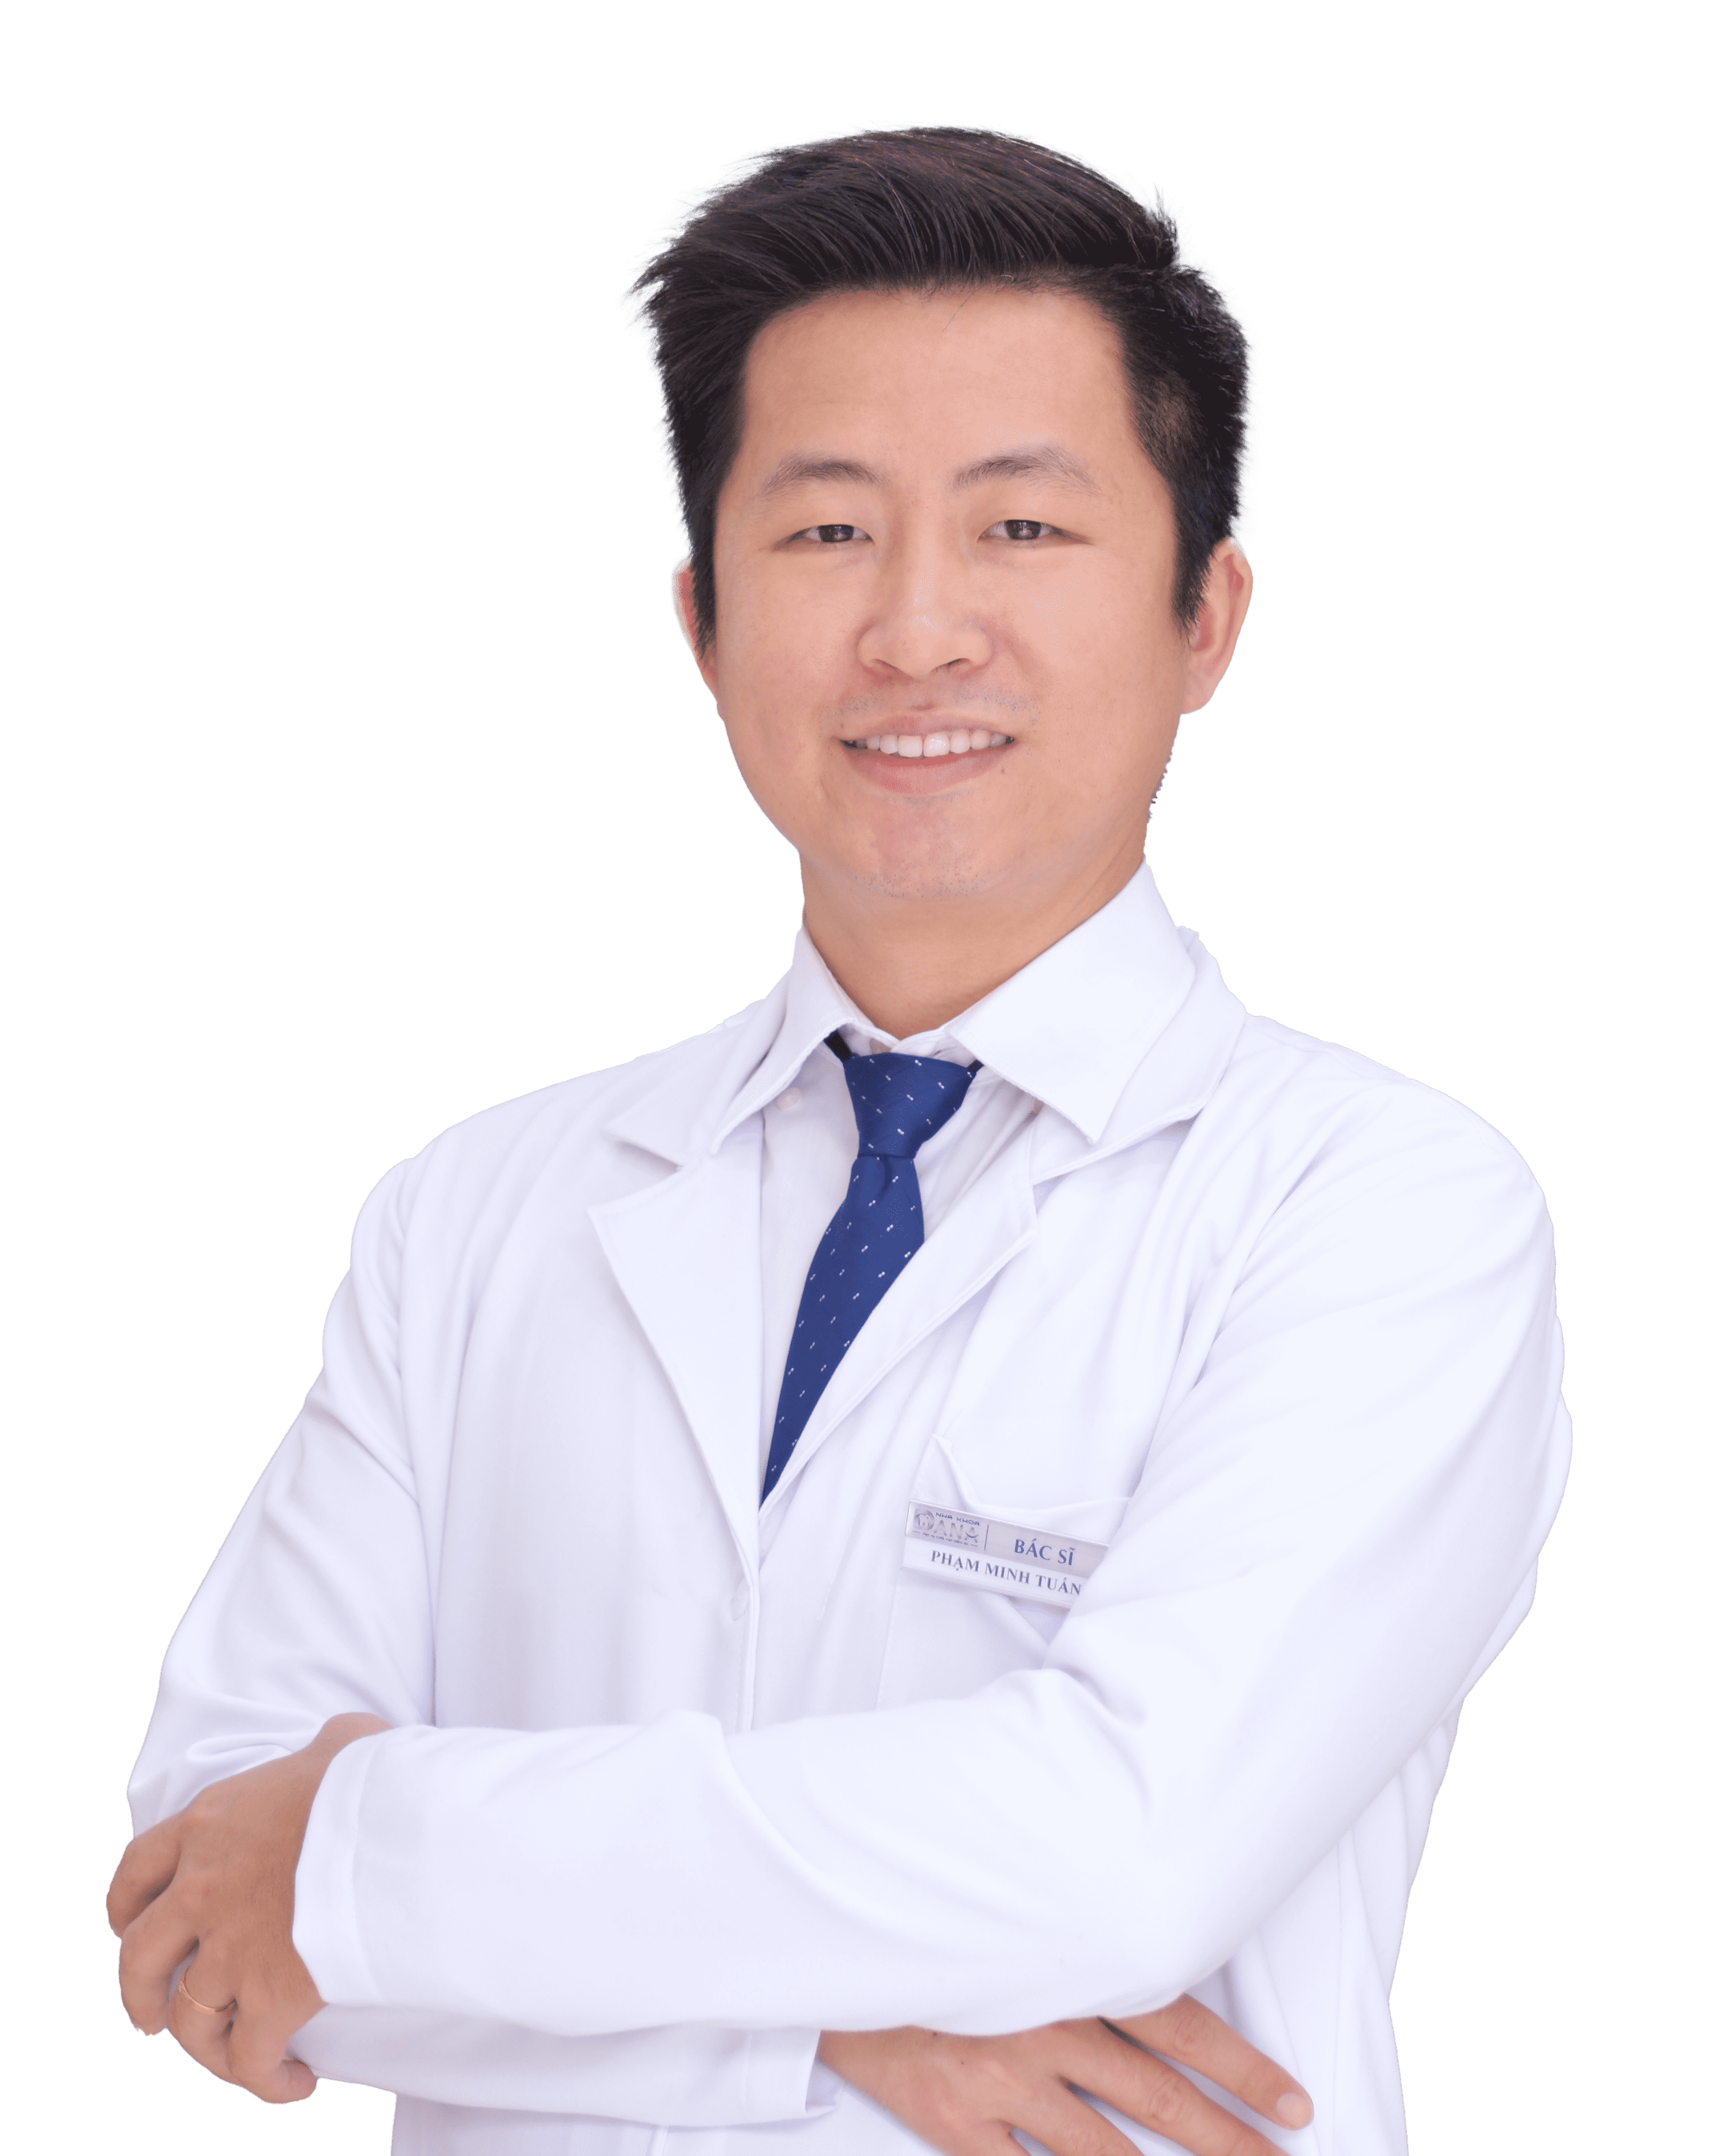 Dentist in da nang, vietnam. Dental specialist implant. Founder dana dental - dentistry in da nang